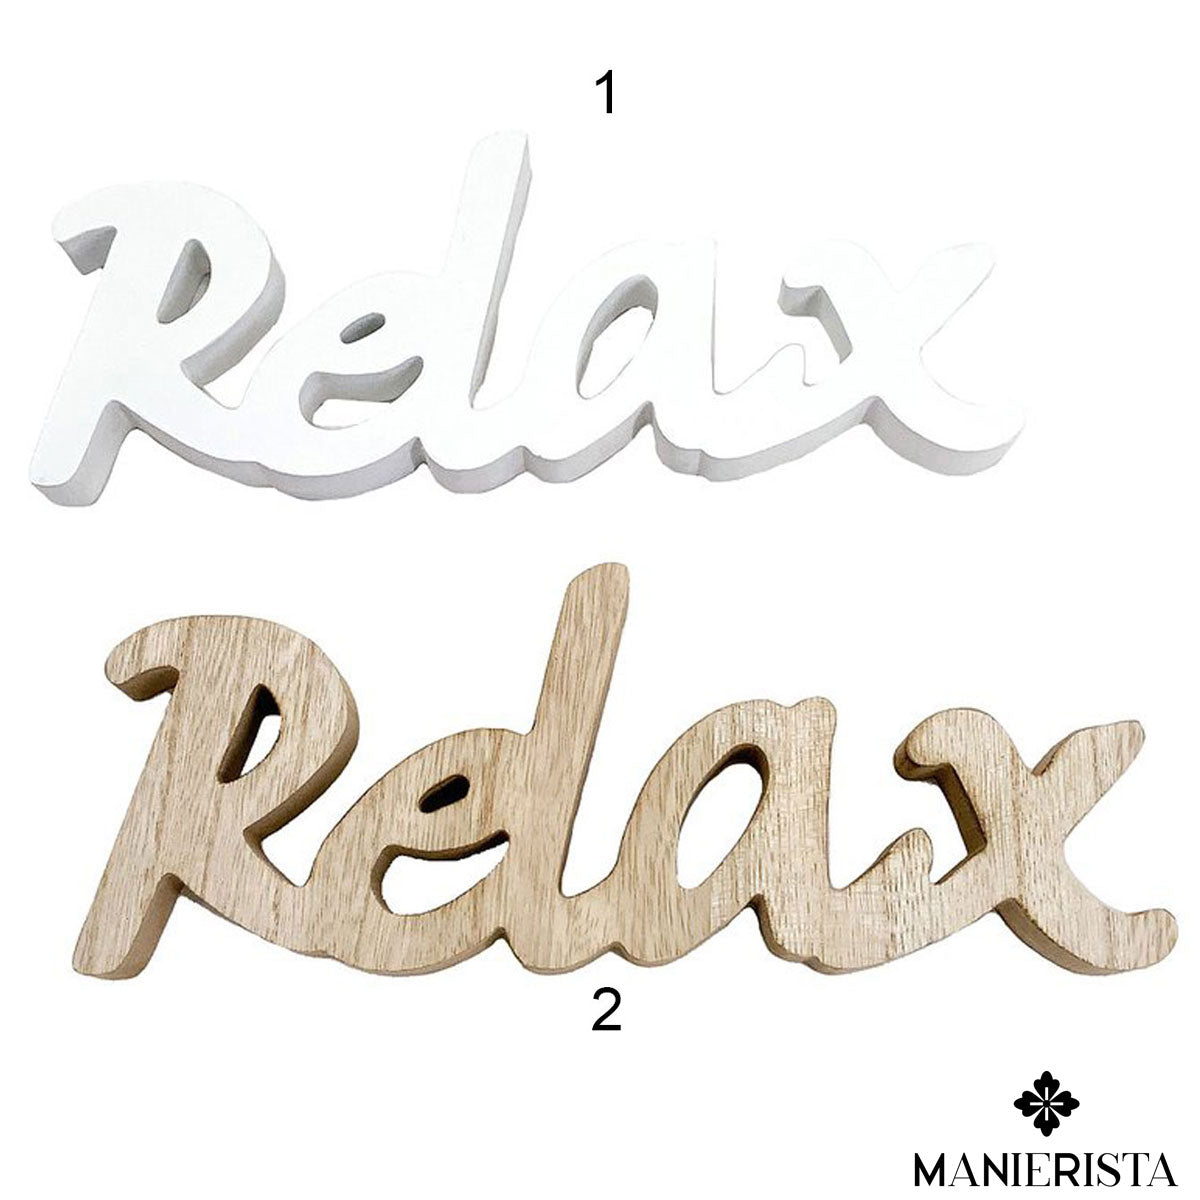 Scritta "Relax" in legno